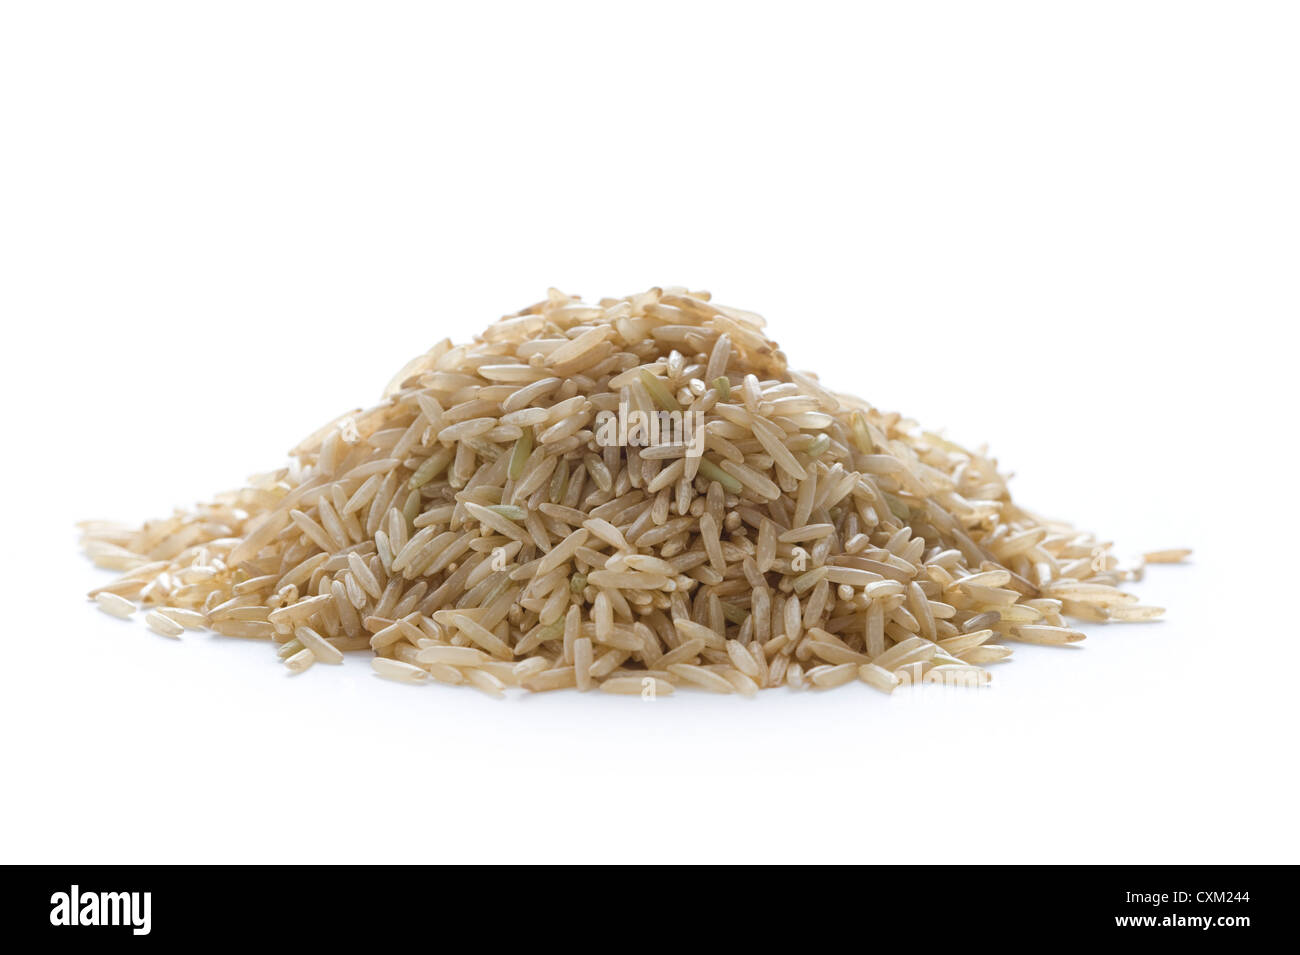 Haufen von rohen ungekochten Vollkorn brauner Basmati-Reis auf weiß isoliert Stockfoto